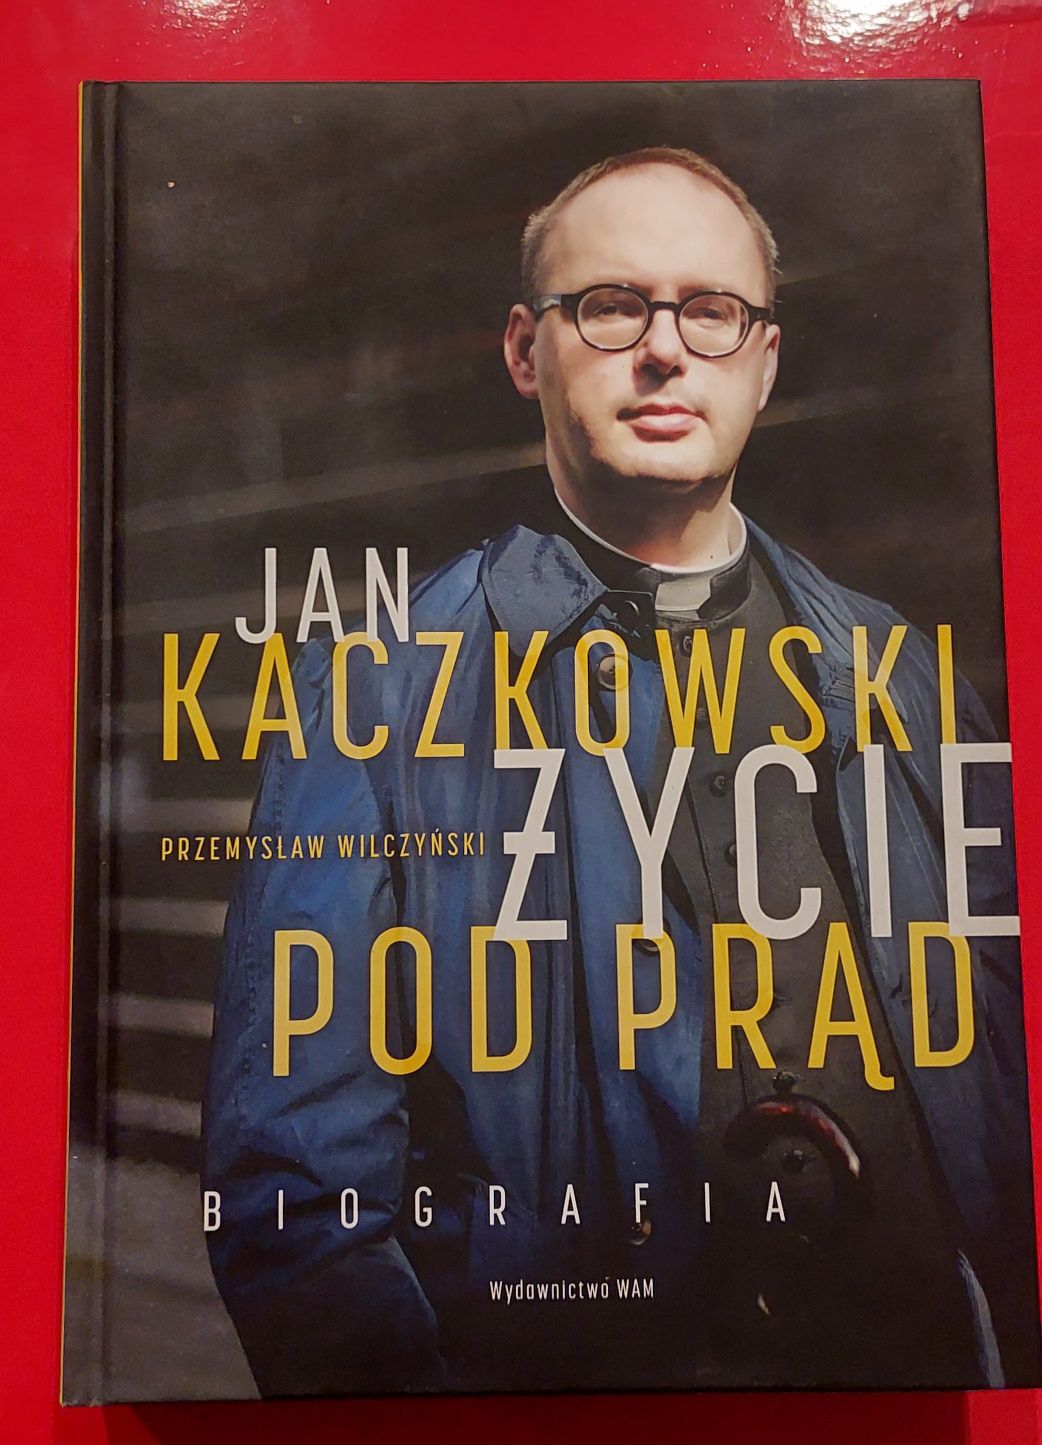 Jan Kaczkowski Zycie pod prąd, biografia